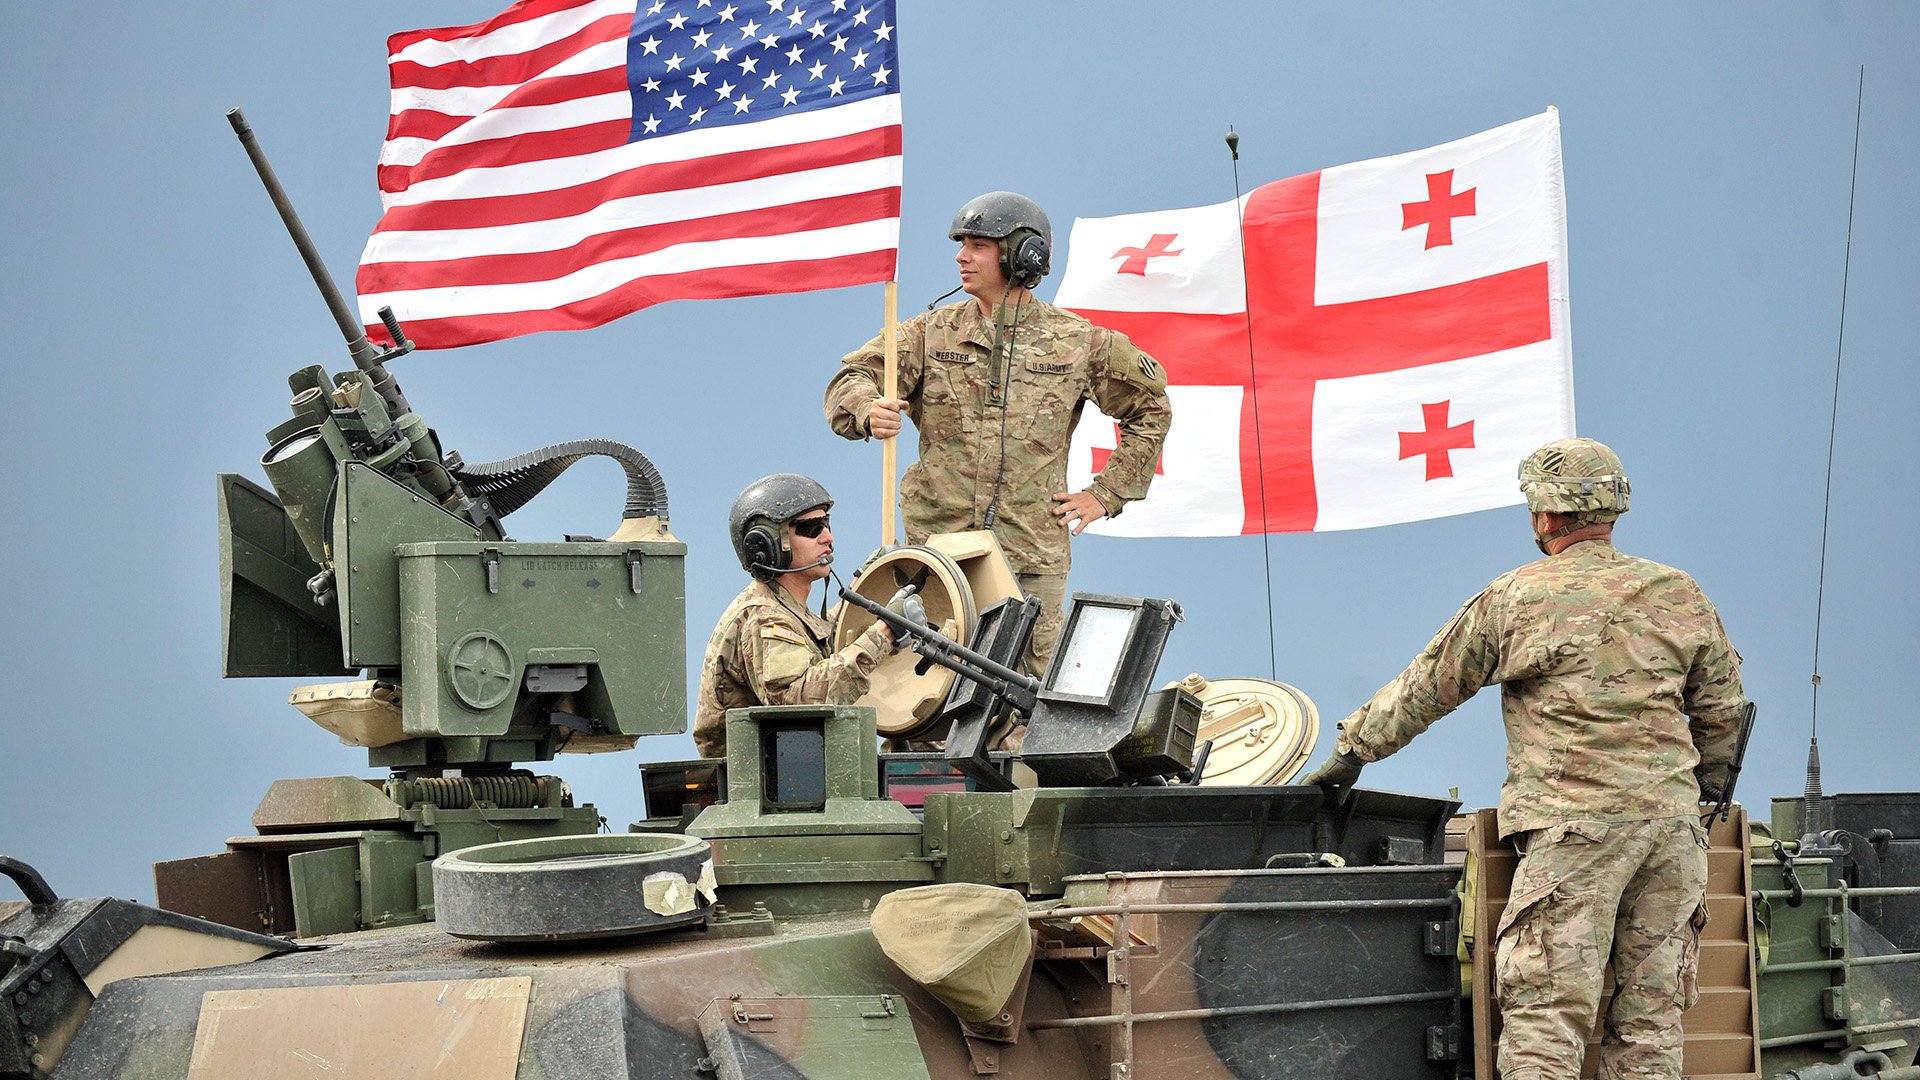 ԱՄՆ-ի և վրացի զինվորականները միասին լեռնային պատրաստության դասընթաց են անցել